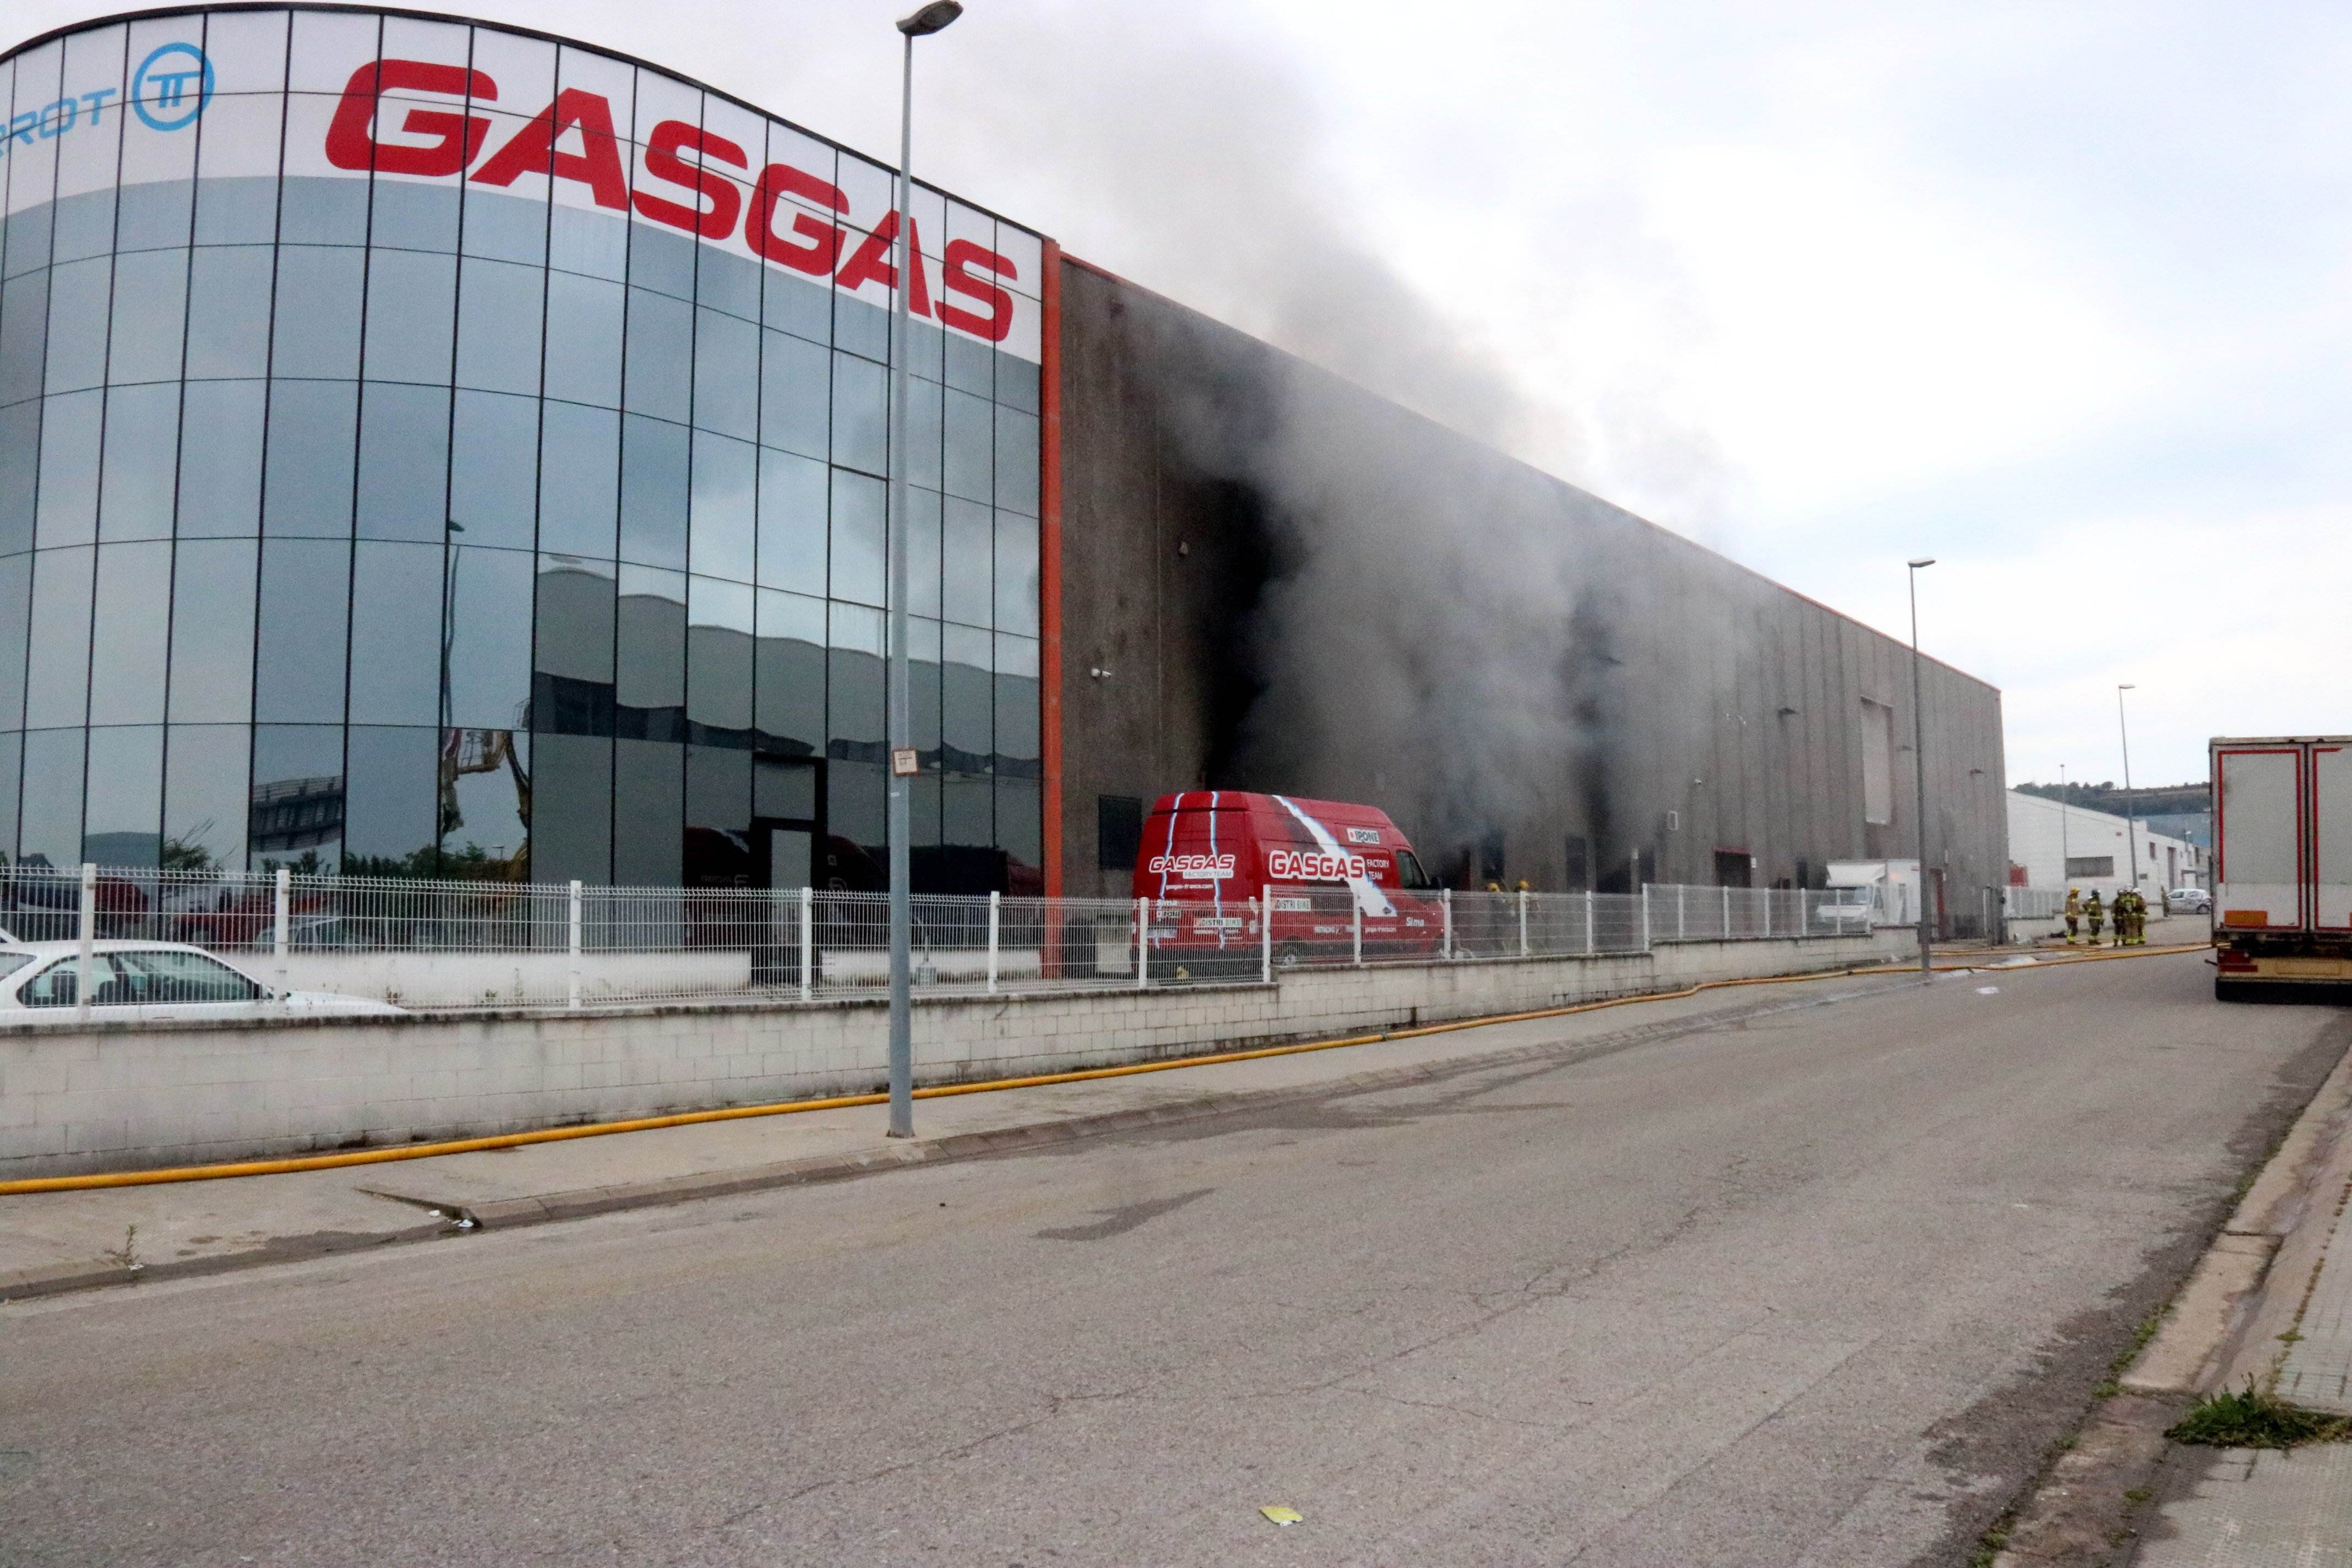 Un incendio quema la fábrica Gas Gas de Salt sin provocar heridos